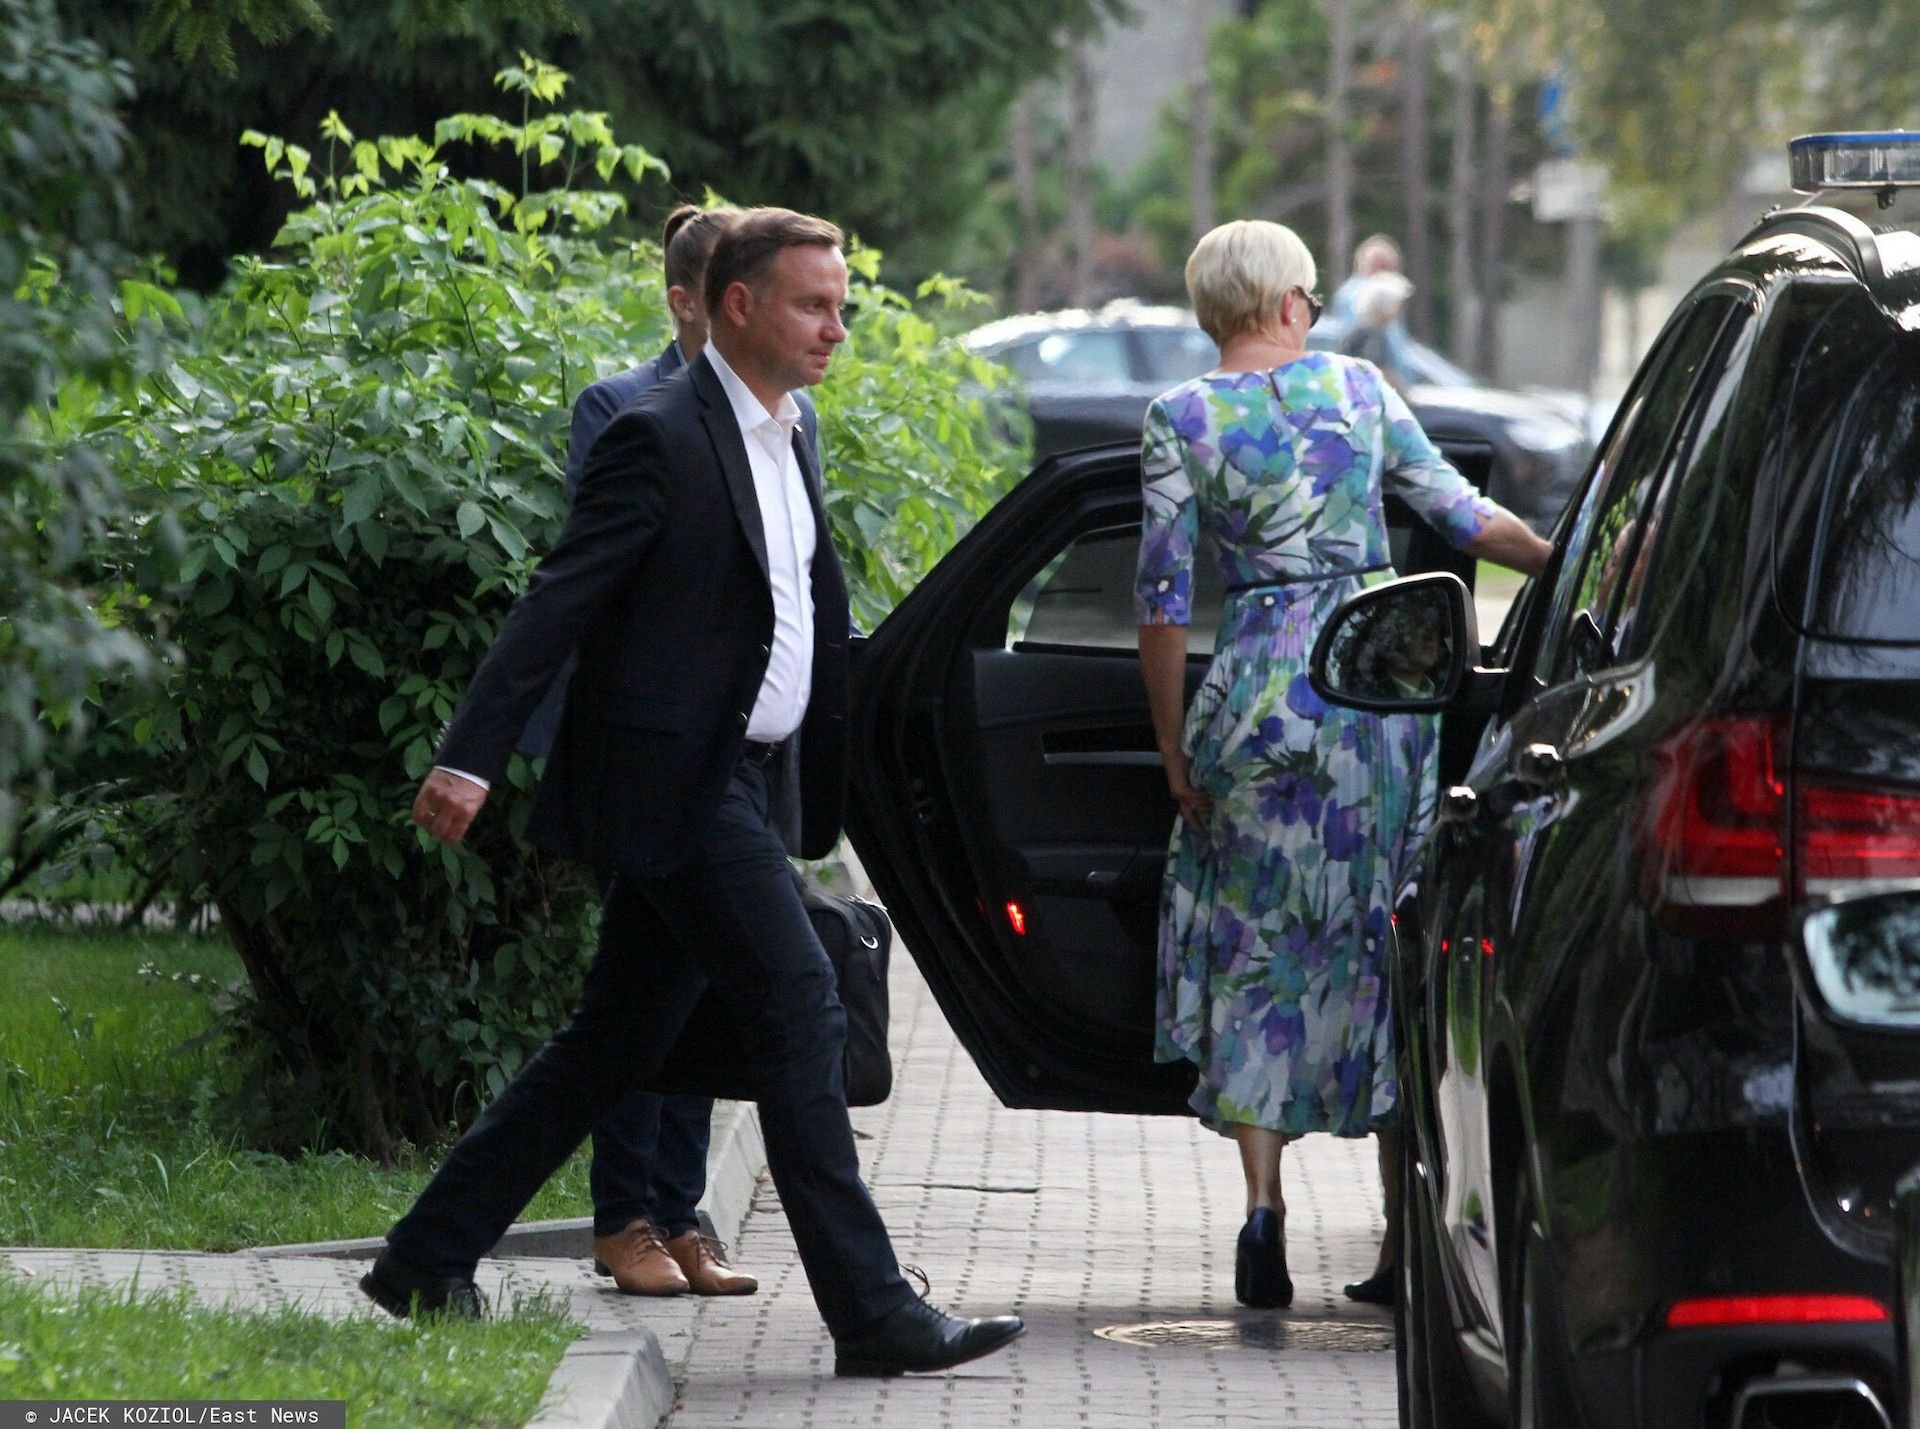 Prezydent Andrzej Duda rozpoczął urlop w Juracie nad Morzem Bałtyckim